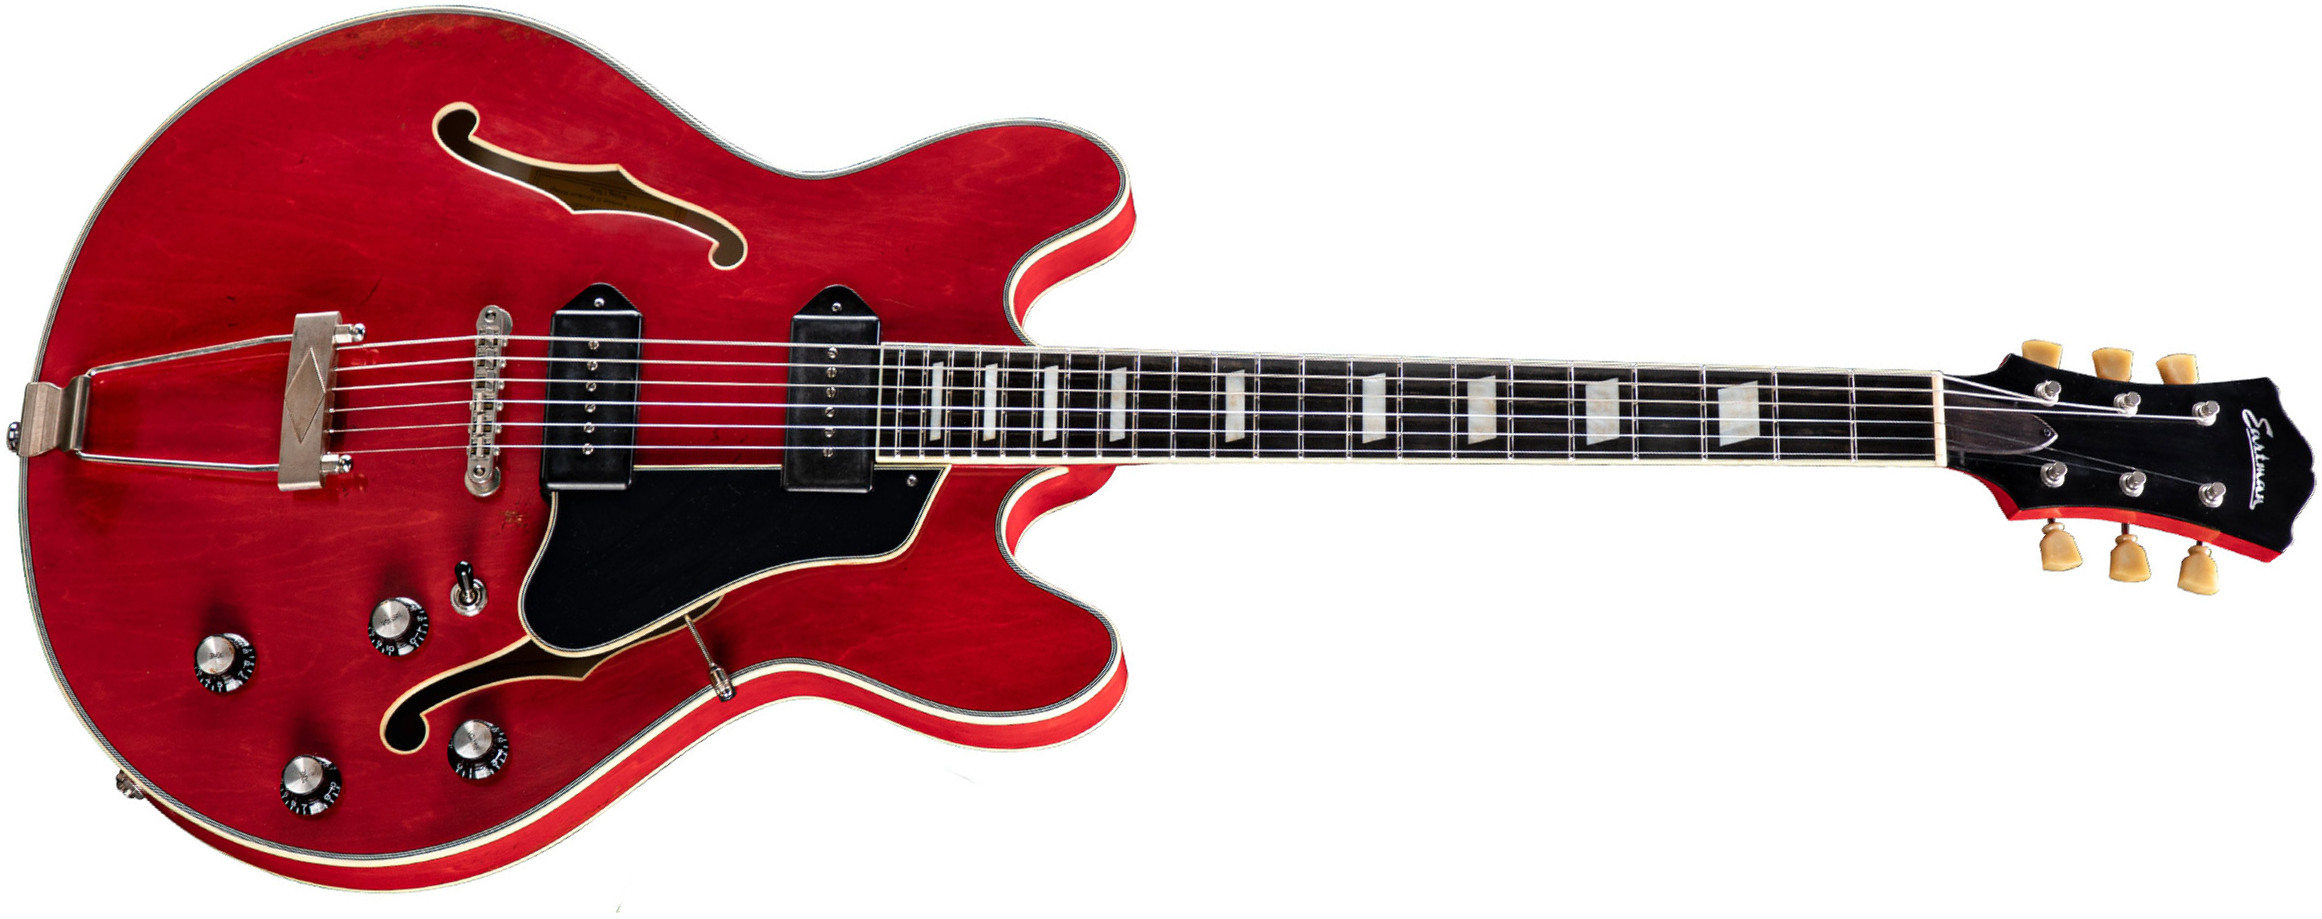 Eastman T64/v Thinline Laminate Tout Erable 2p90 Lollar Ht Eb - Antique Red - Guitarra eléctrica semi caja - Main picture